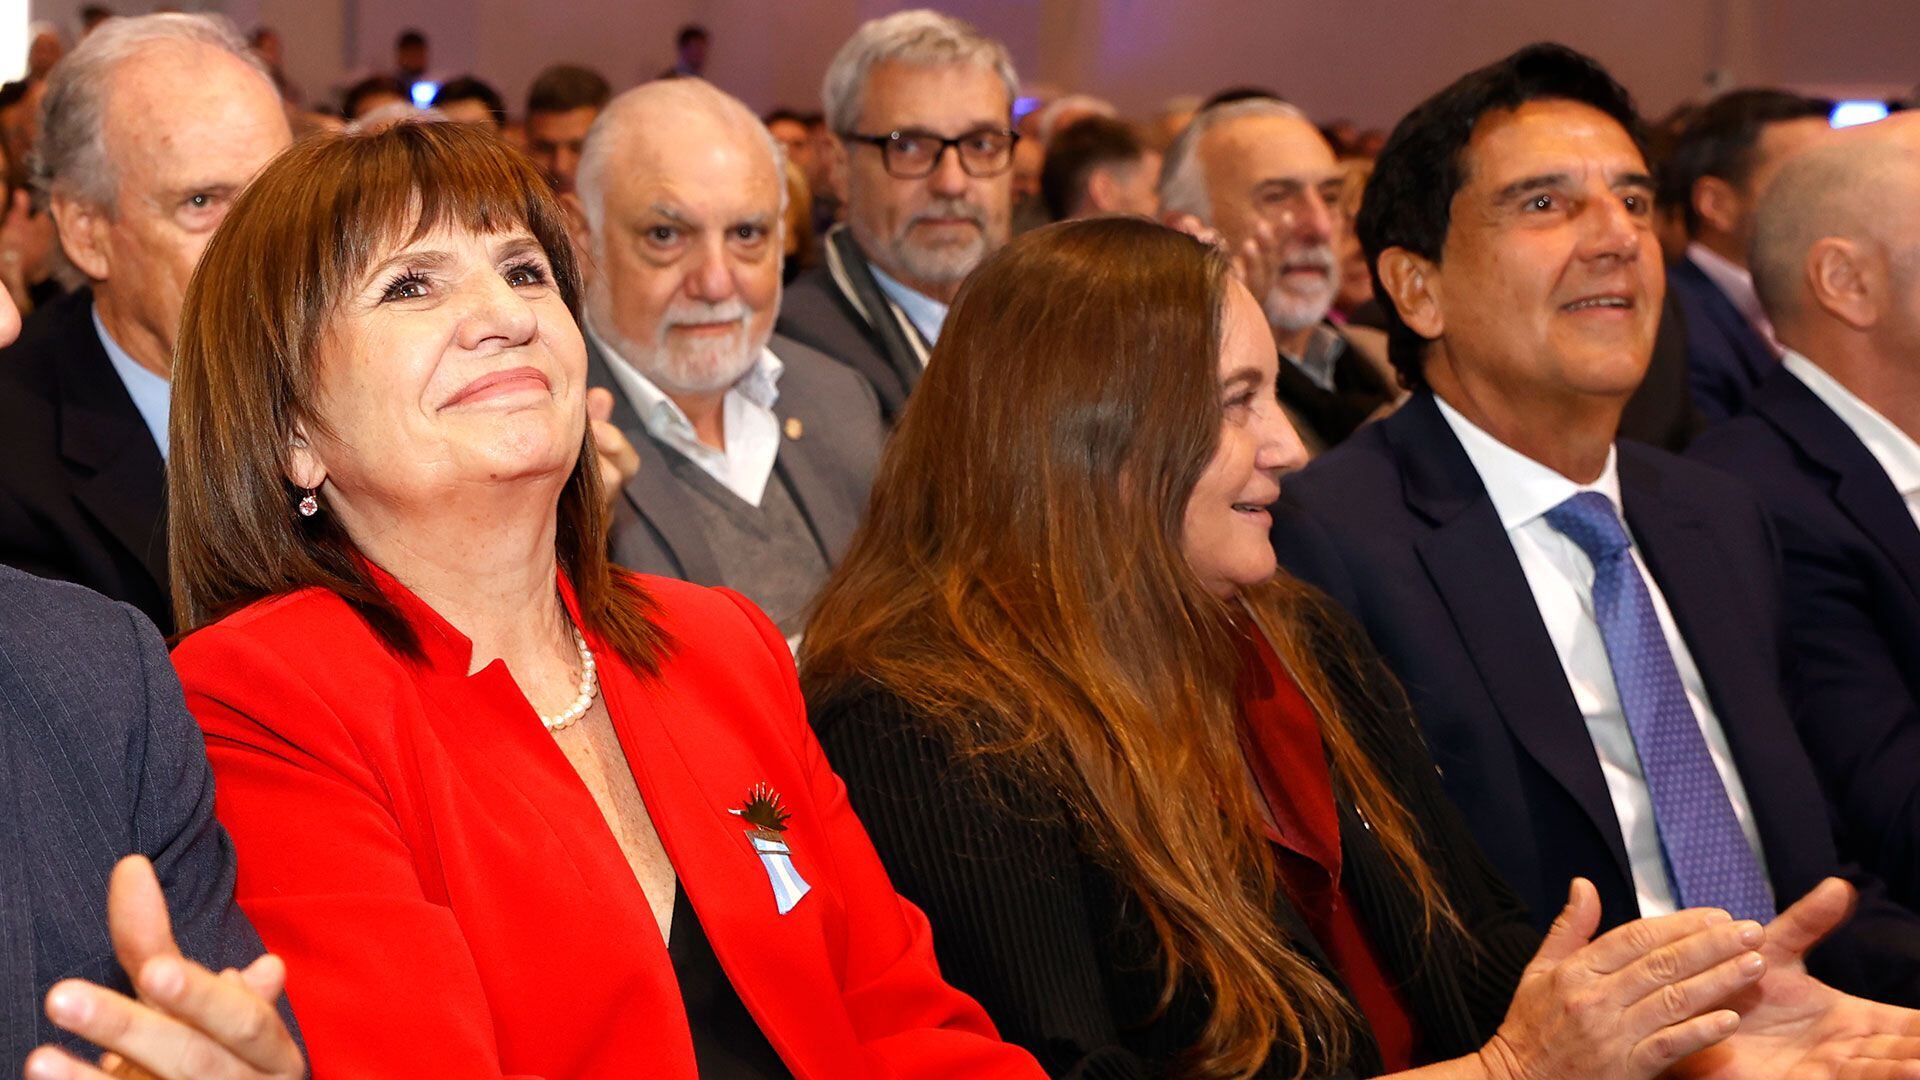 Bullrich, María Pía Astori, presidenta de la Fundación Mediterránea, y Melconian
